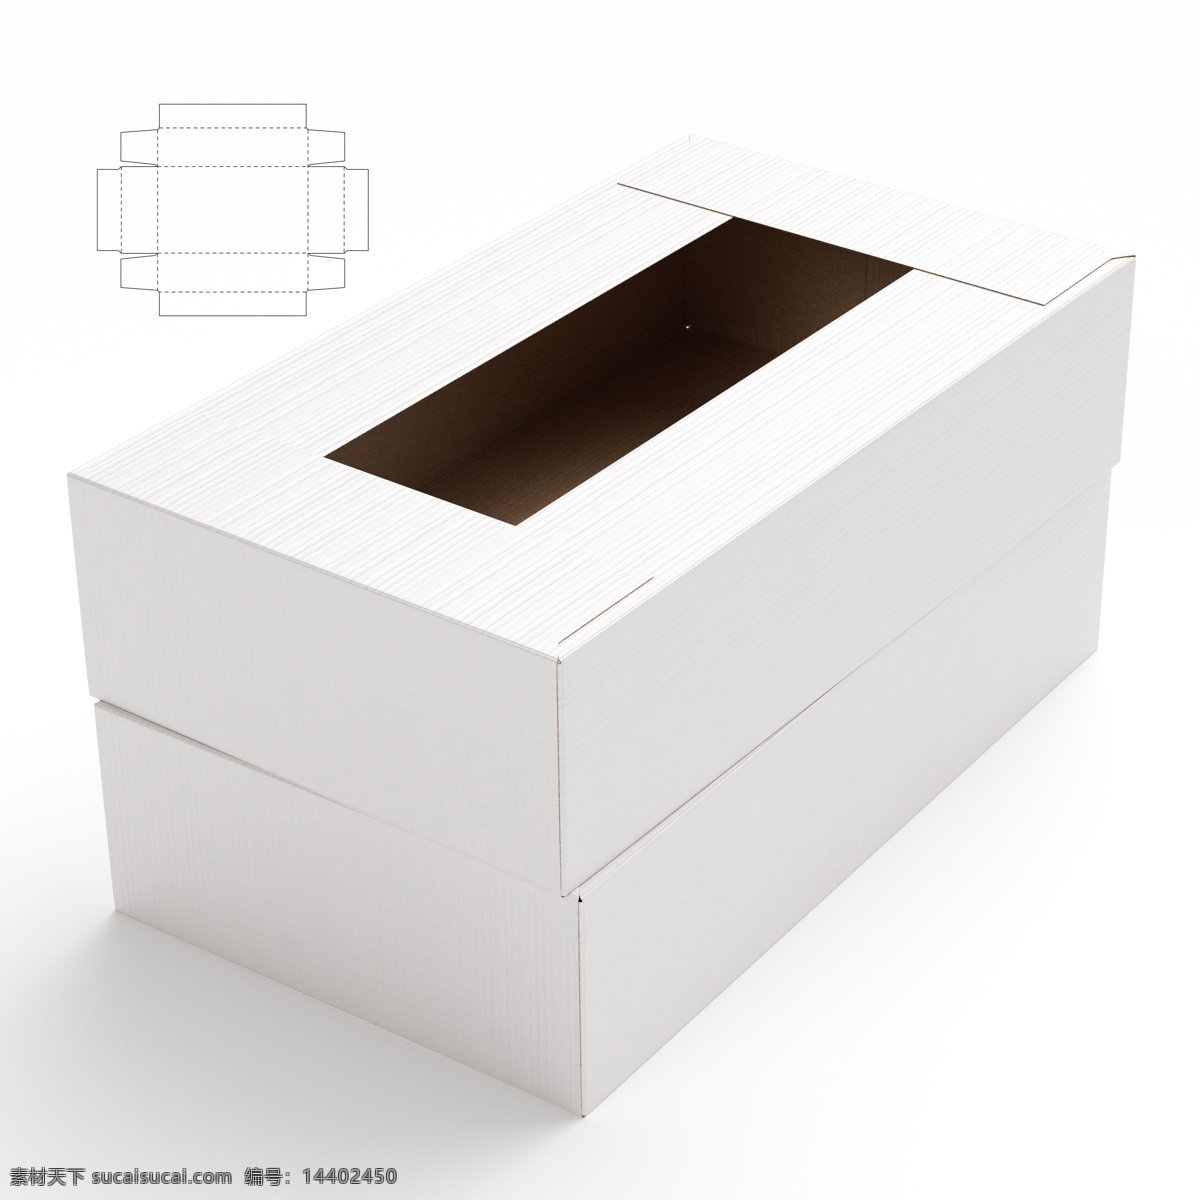 纸盒设计 包装盒设计 包装盒展开图 包装平面图 钢刀线 包装设计 包装效果图 空白包装盒 盒子 产品包装盒 长方形纸盒 其他类别 生活百科 白色